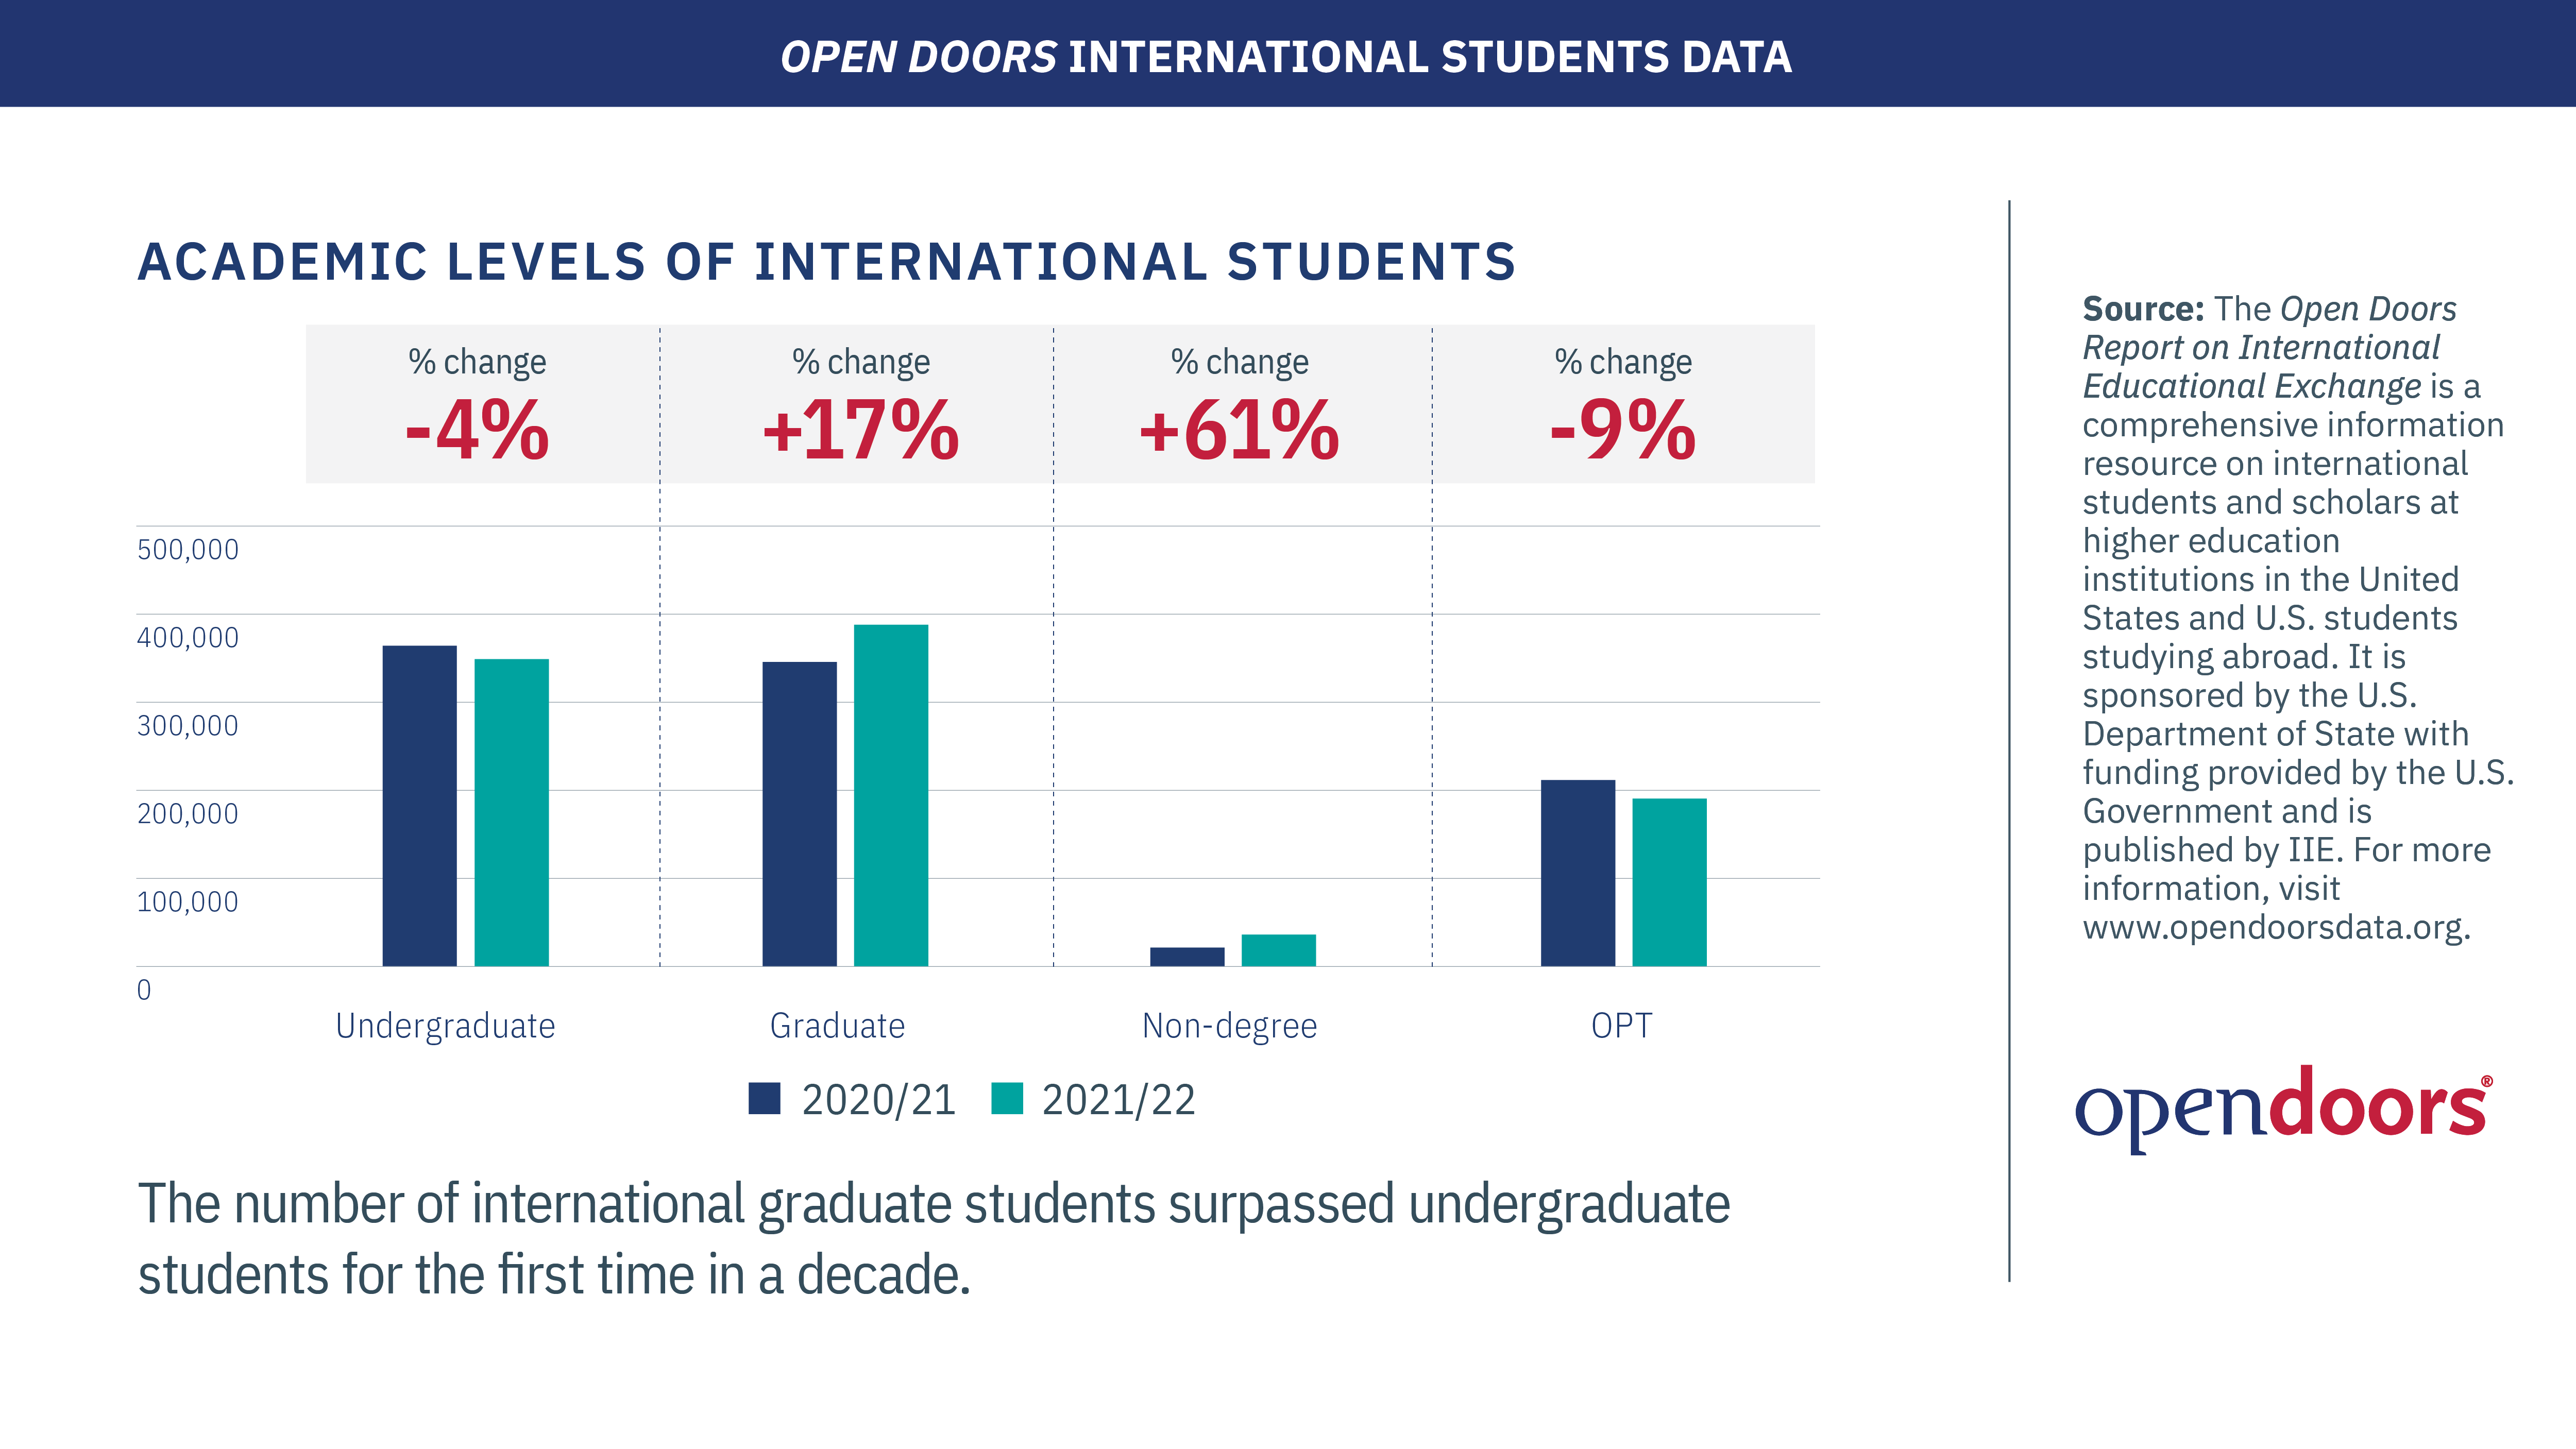 Un gráfico de barras muestra que los estudiantes universitarios internacionales han disminuido en un 4 por ciento, mientras que la matrícula de posgrado ha aumentado significativamente.